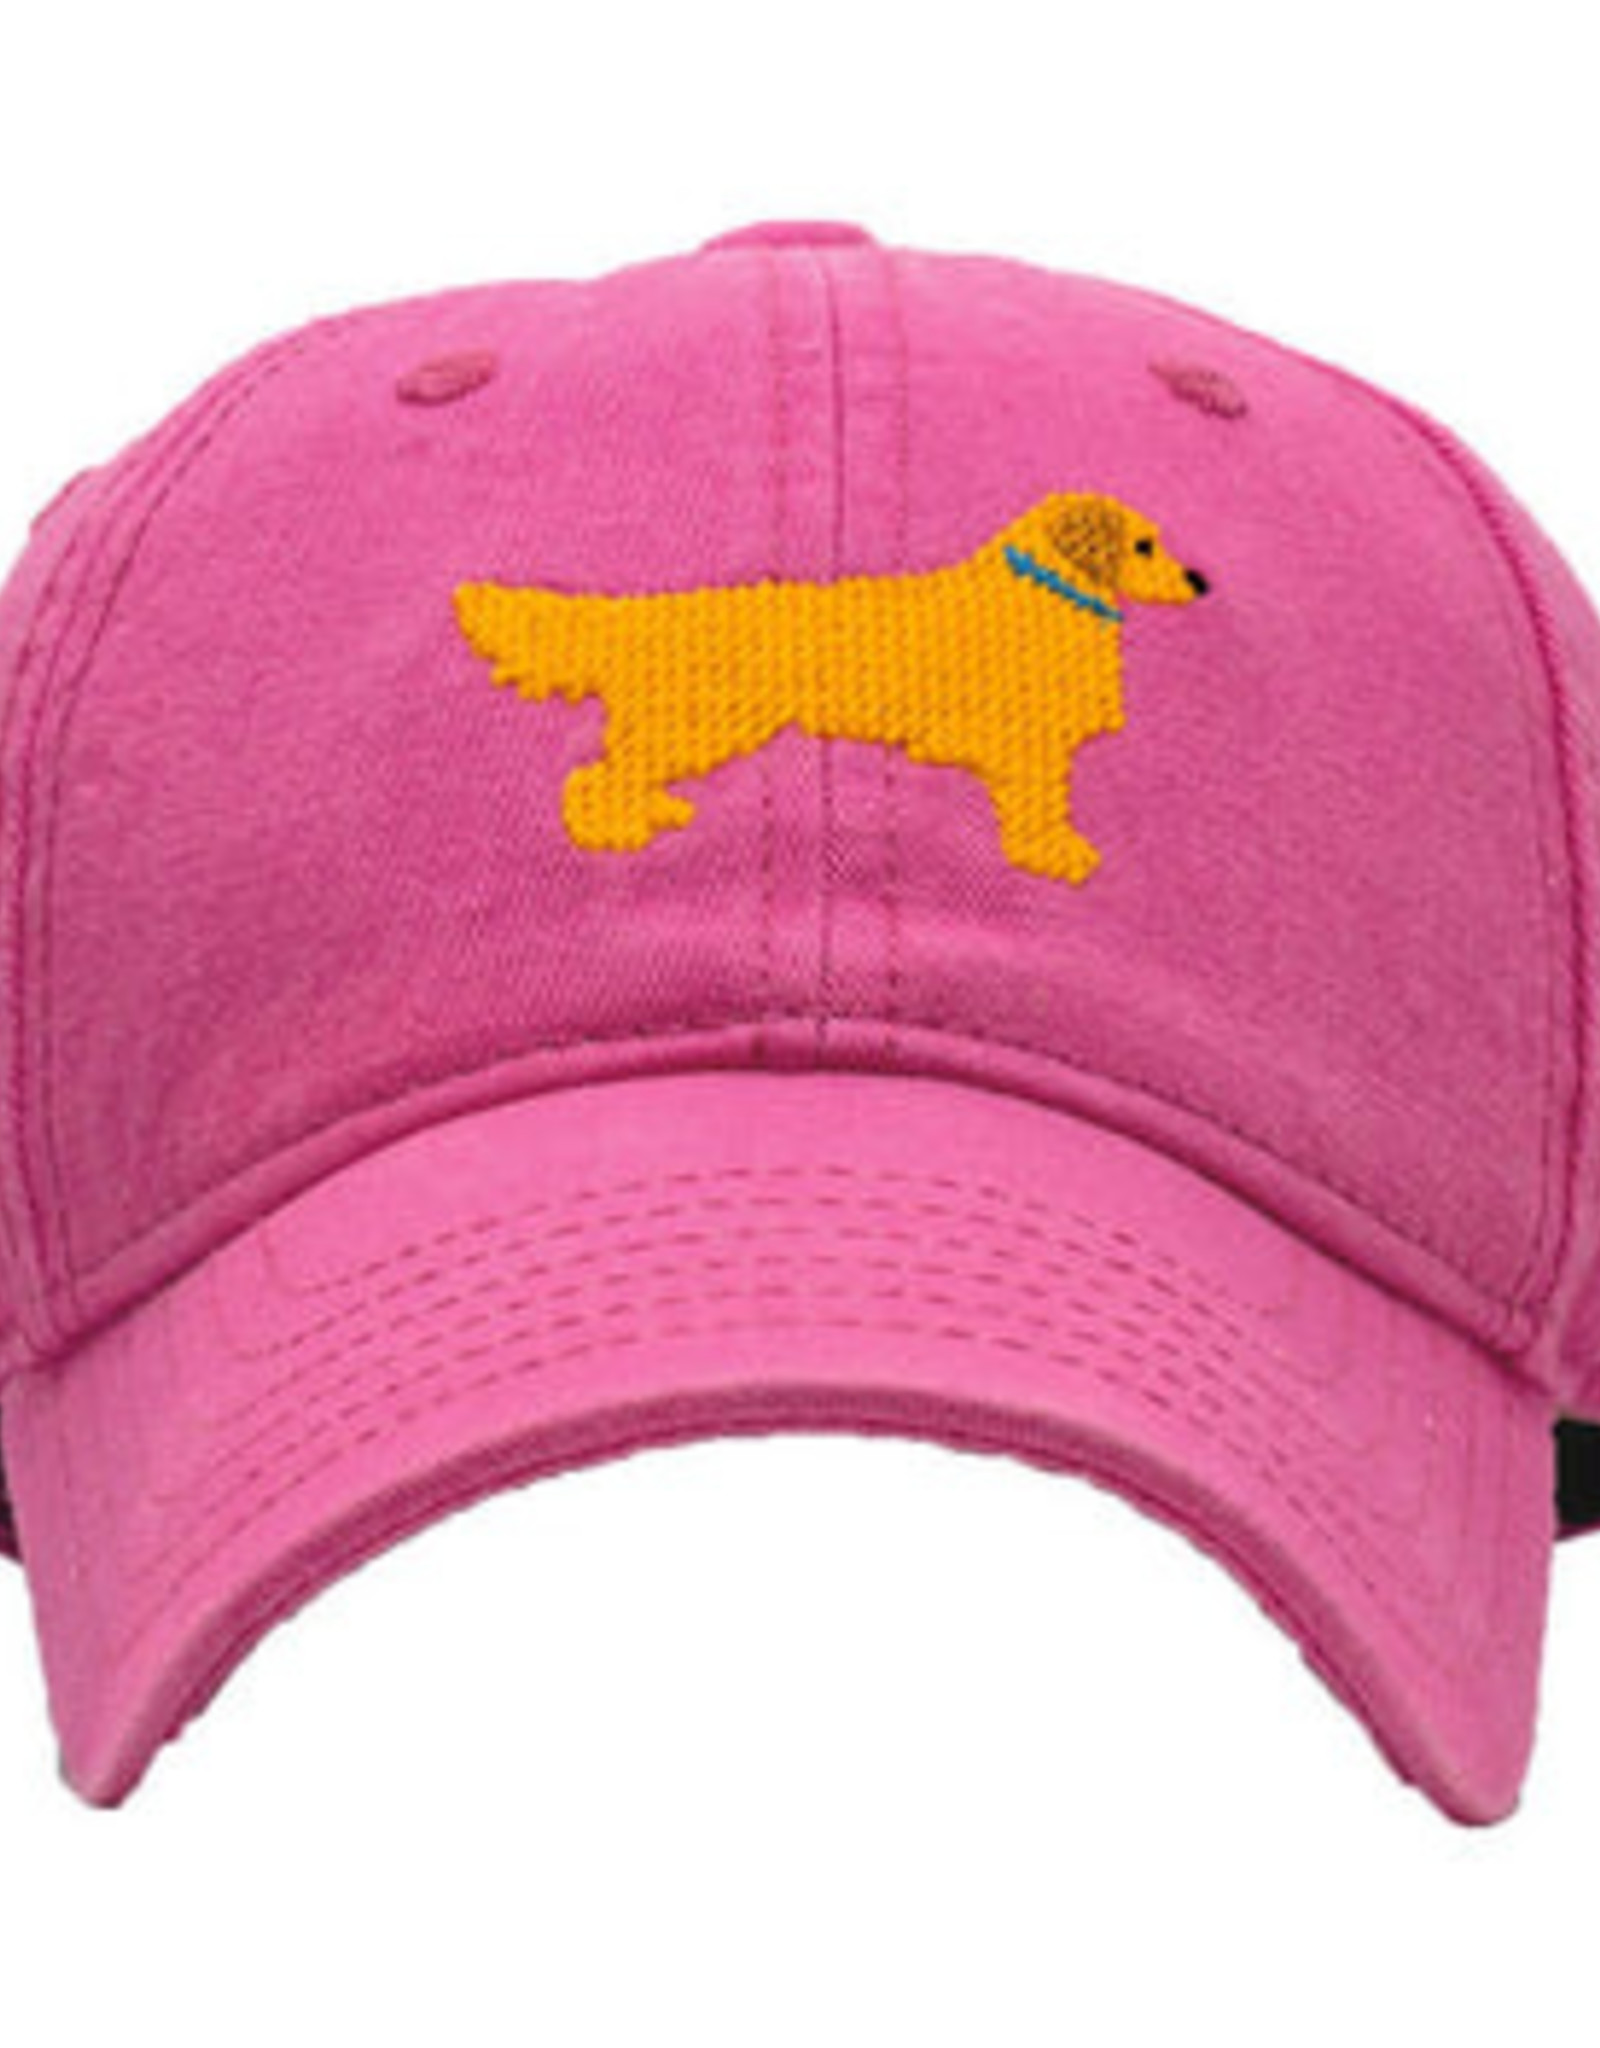 Harding Lane Youth Needlepoint Baseball Hat Retriever on Hot Pink